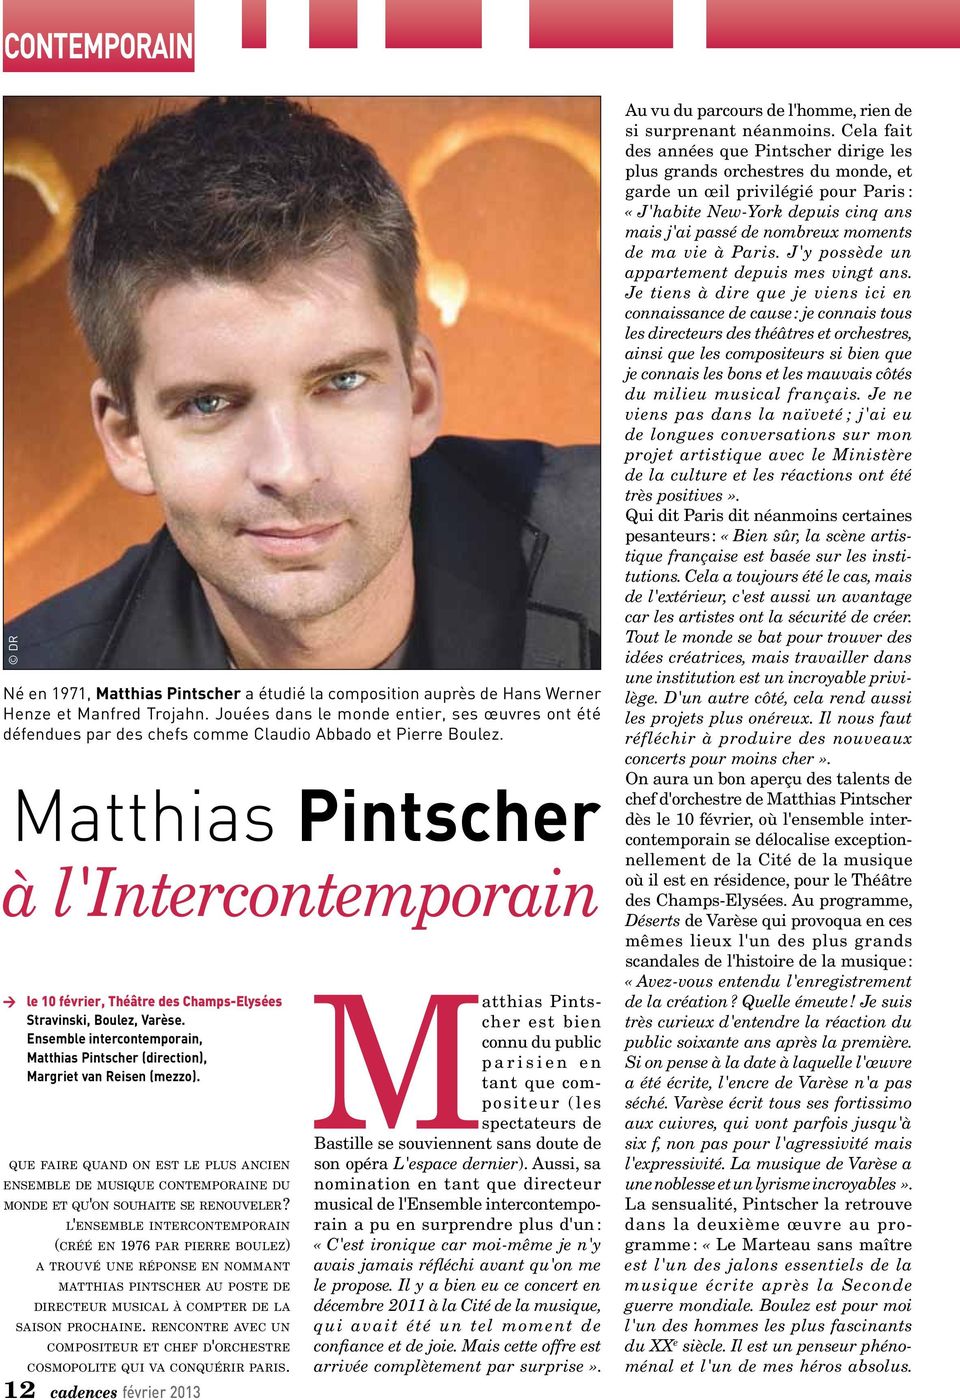 Matthias Pintscher à l'intercontemporain > le 10 février, Théâtre des Champs-Elysées Stravinski, Boulez, Varèse.